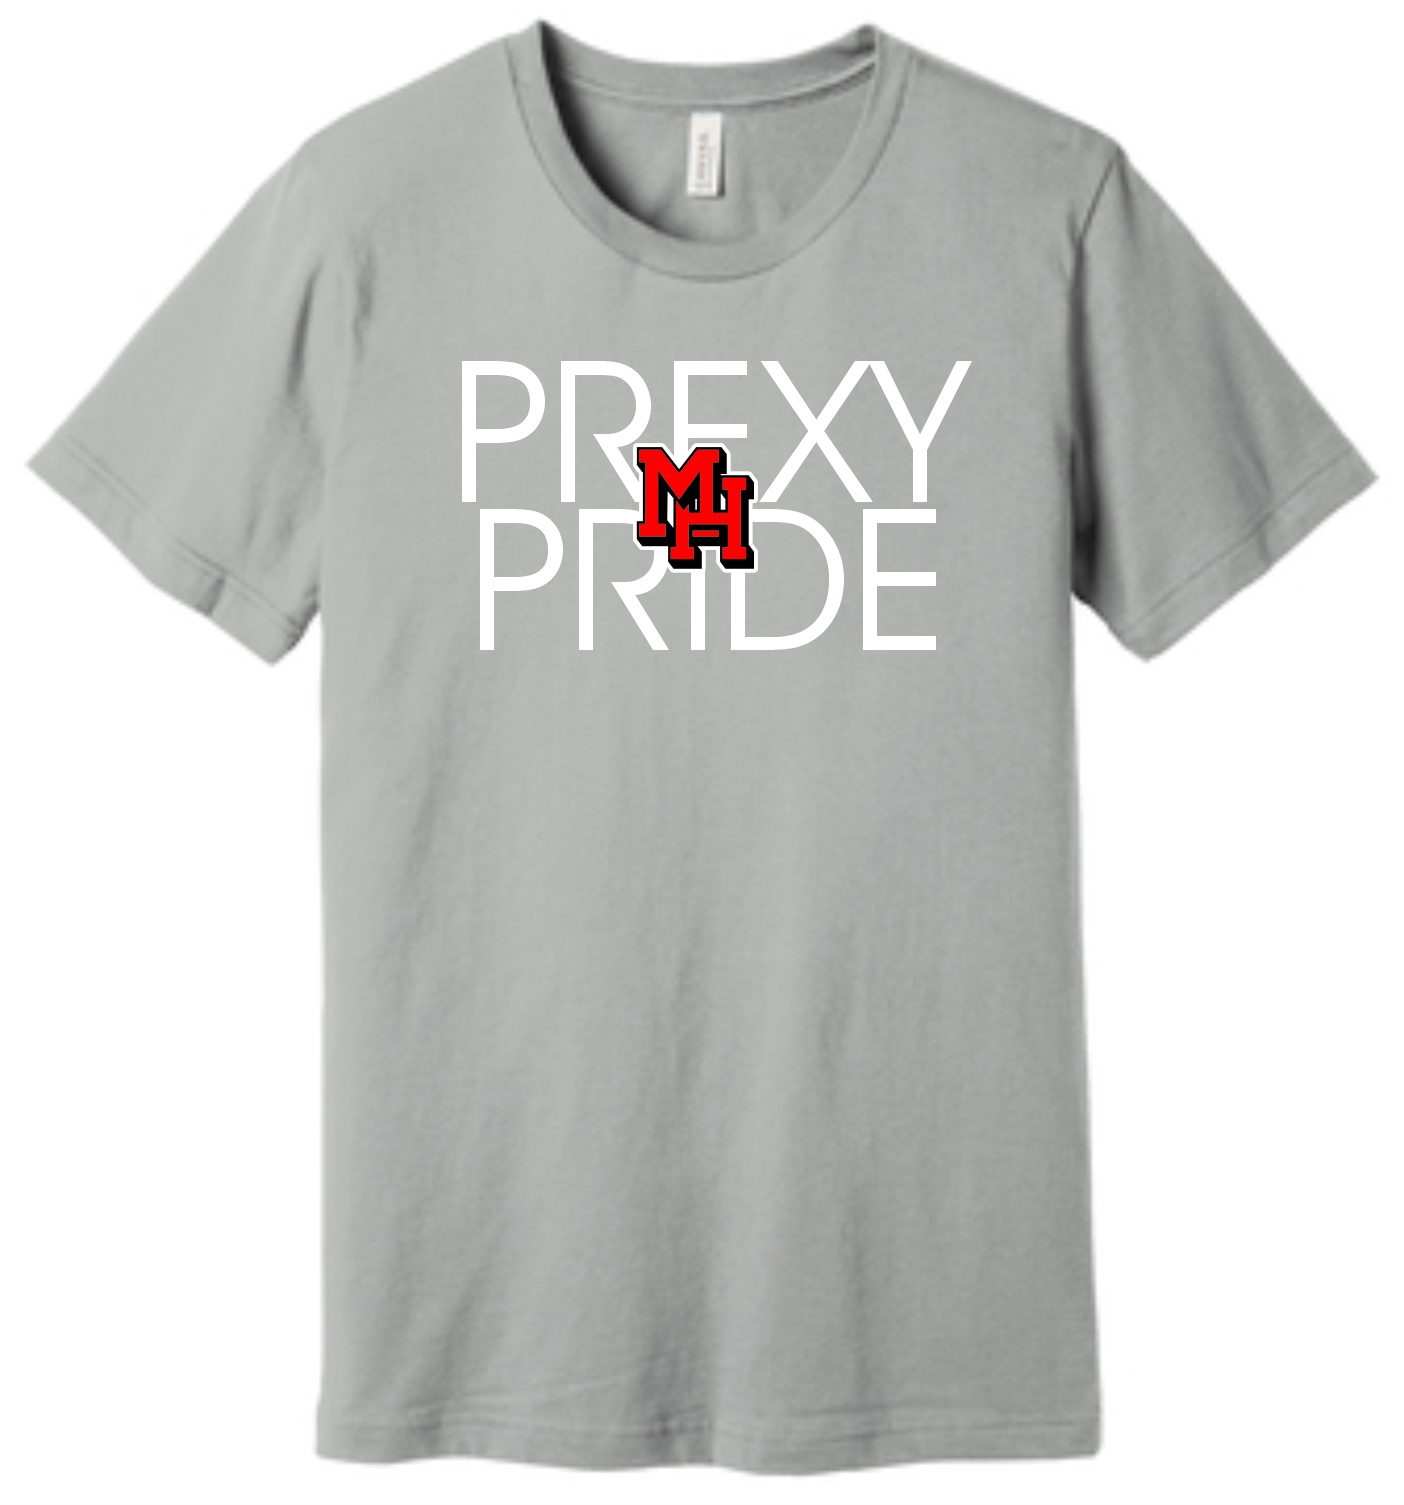 Prexy Pride Bella Canvas T-Shirt